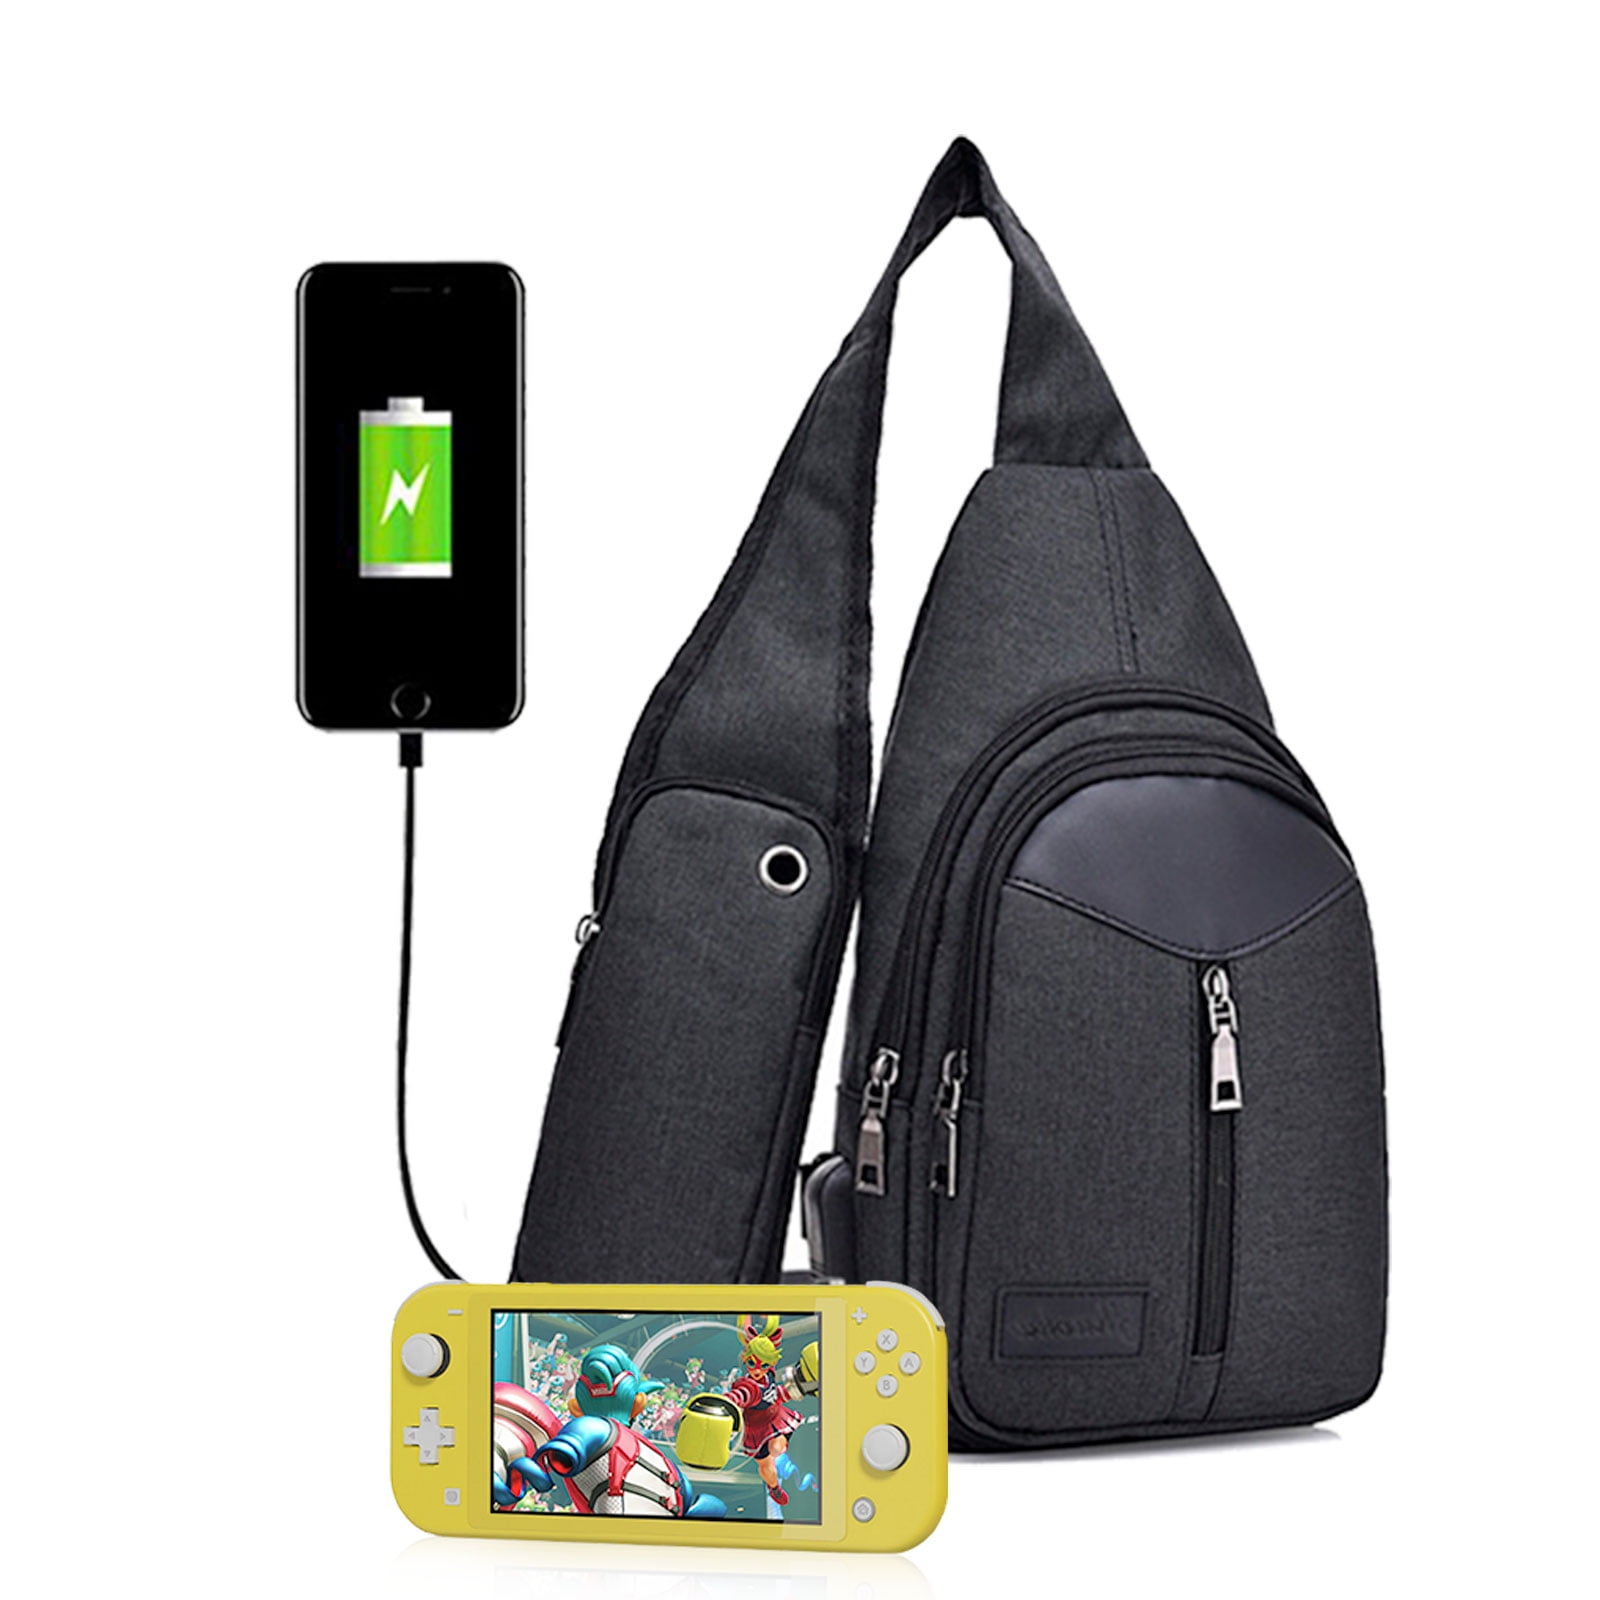 Labyrinth Thirteen Hours Tim Burton Backpack Daypack Rucksack Laptop Shoulder Bag with USB Charging Port